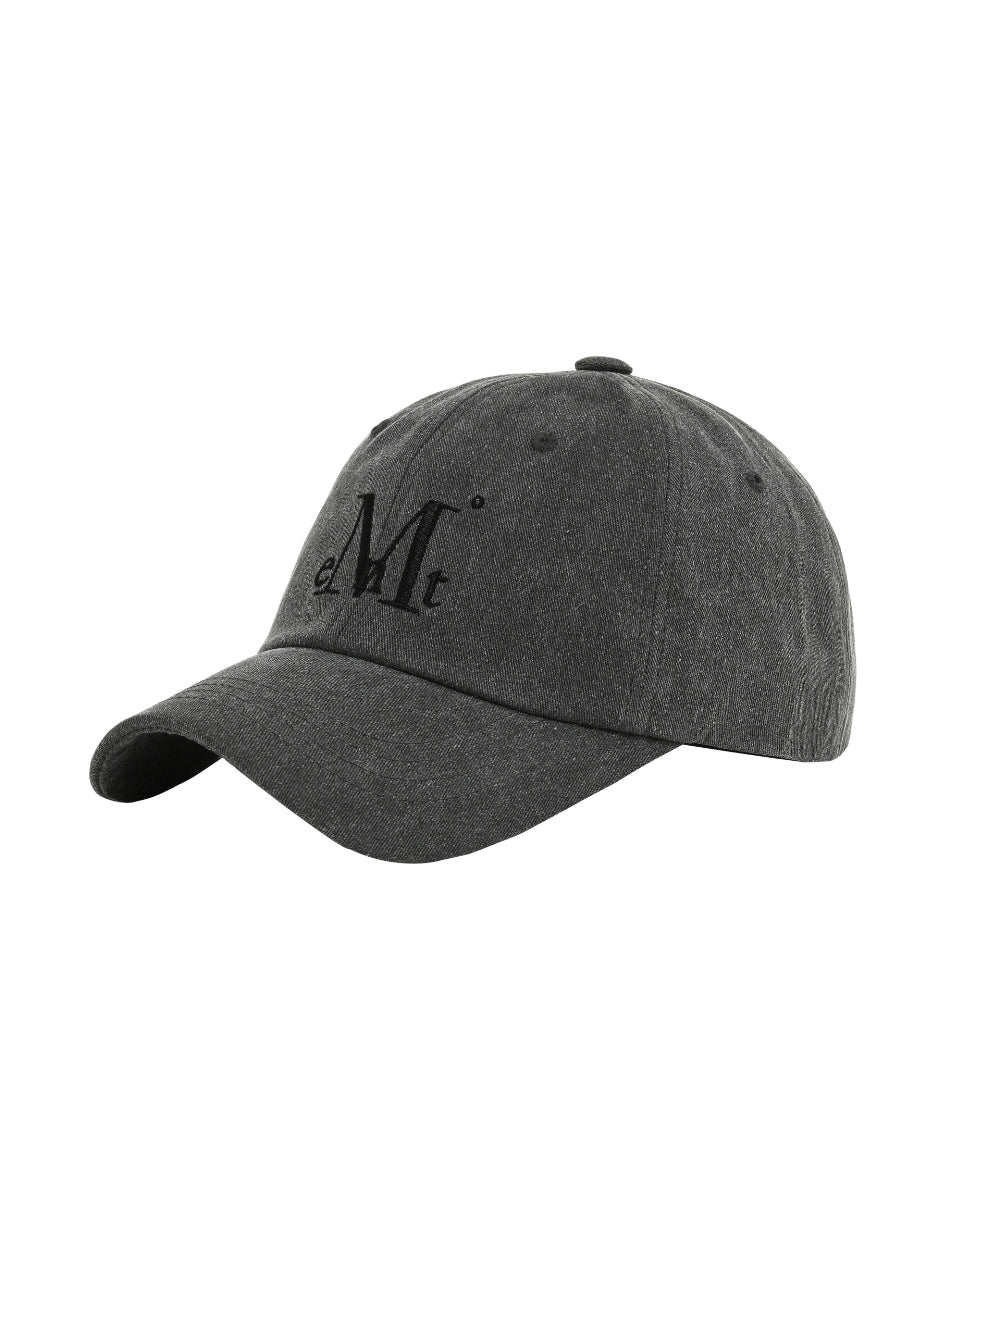 MUCENT BALL CAP (Dyeing gray denim)